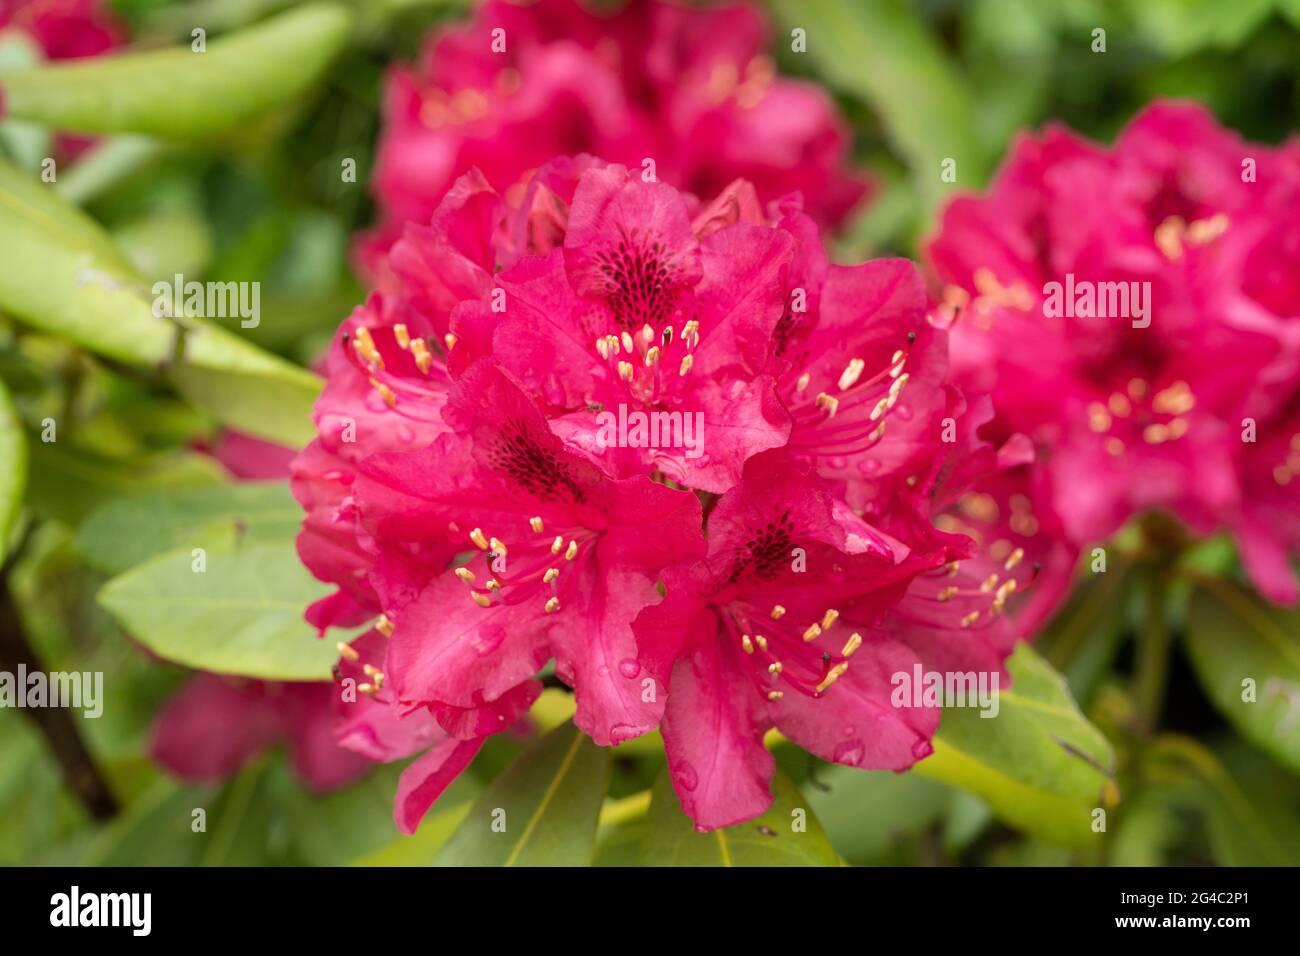 Rhododendron ‘Marie Forte’ blüht mit Regentropfen. Gruppen von trichterförmigen tiefrot-roten Blüten mit dunklen Markierungen am Hals jeder Blume Stockfoto